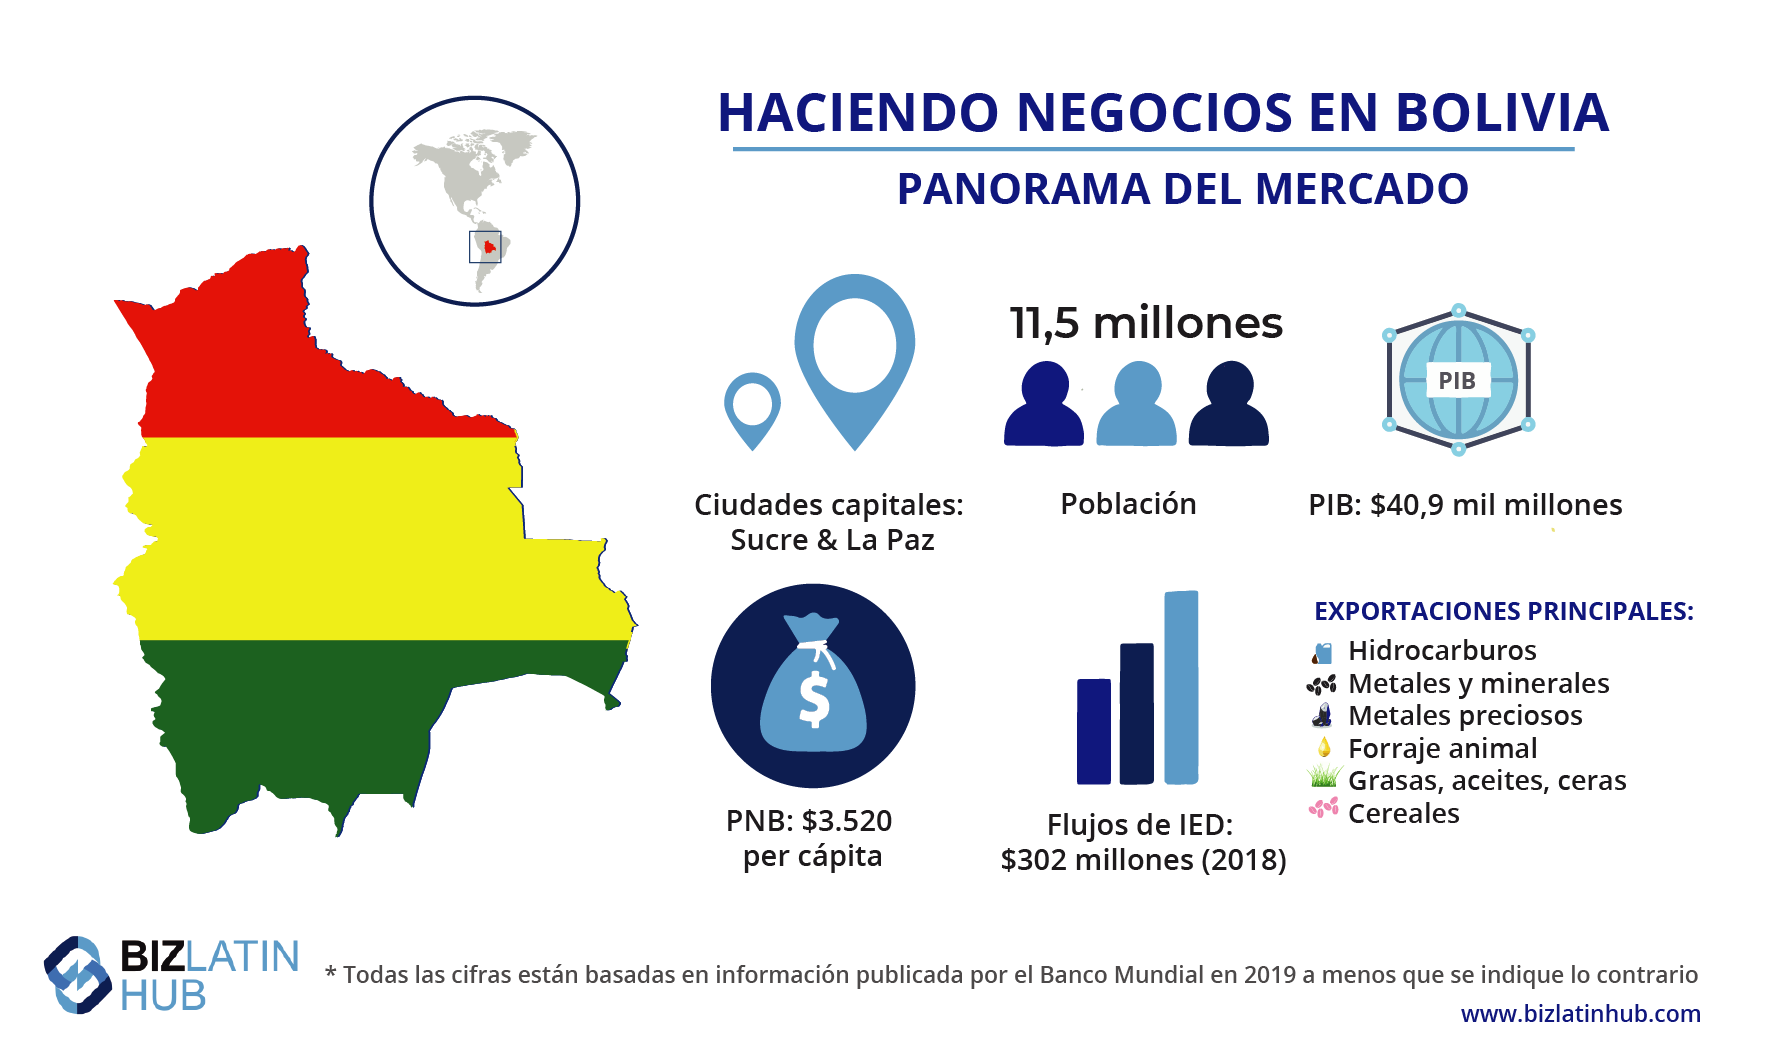 Una infografía que ofrece un panorama del mercado en Bolivia, donde se pueden entender los requisitos de facturación para una empresa extranjera